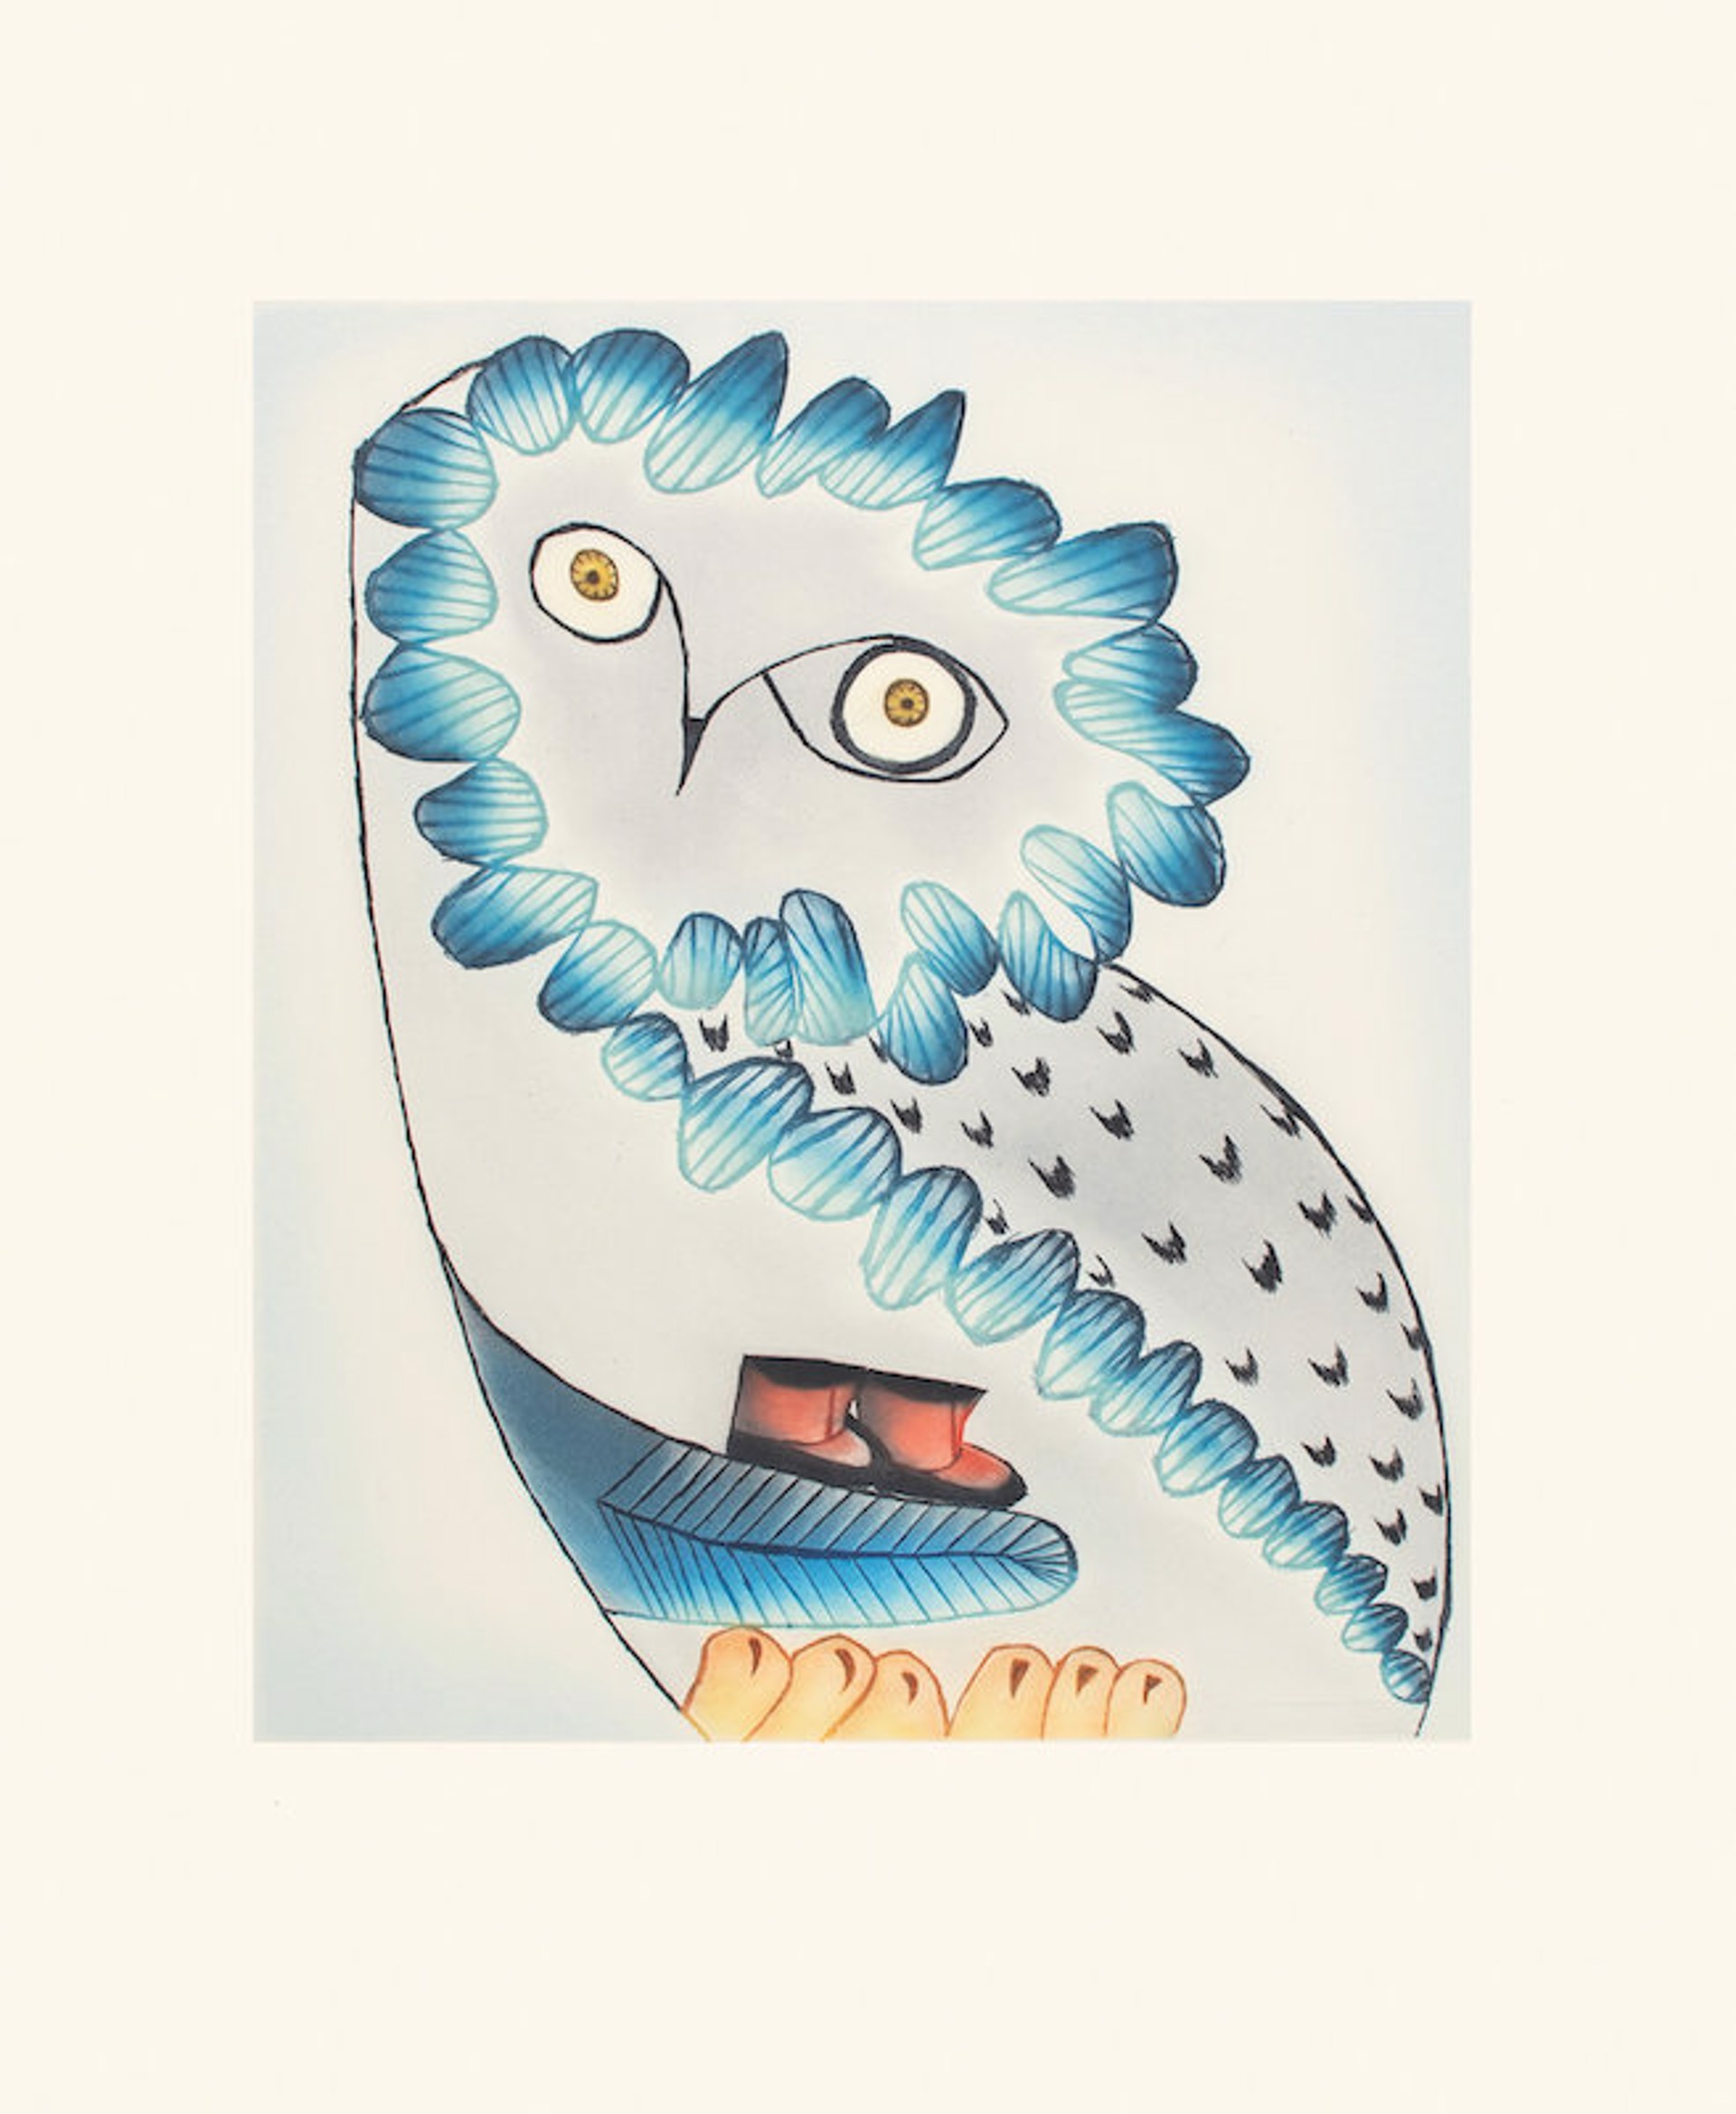 Owl's Bequest by Ningiukulu Teevee